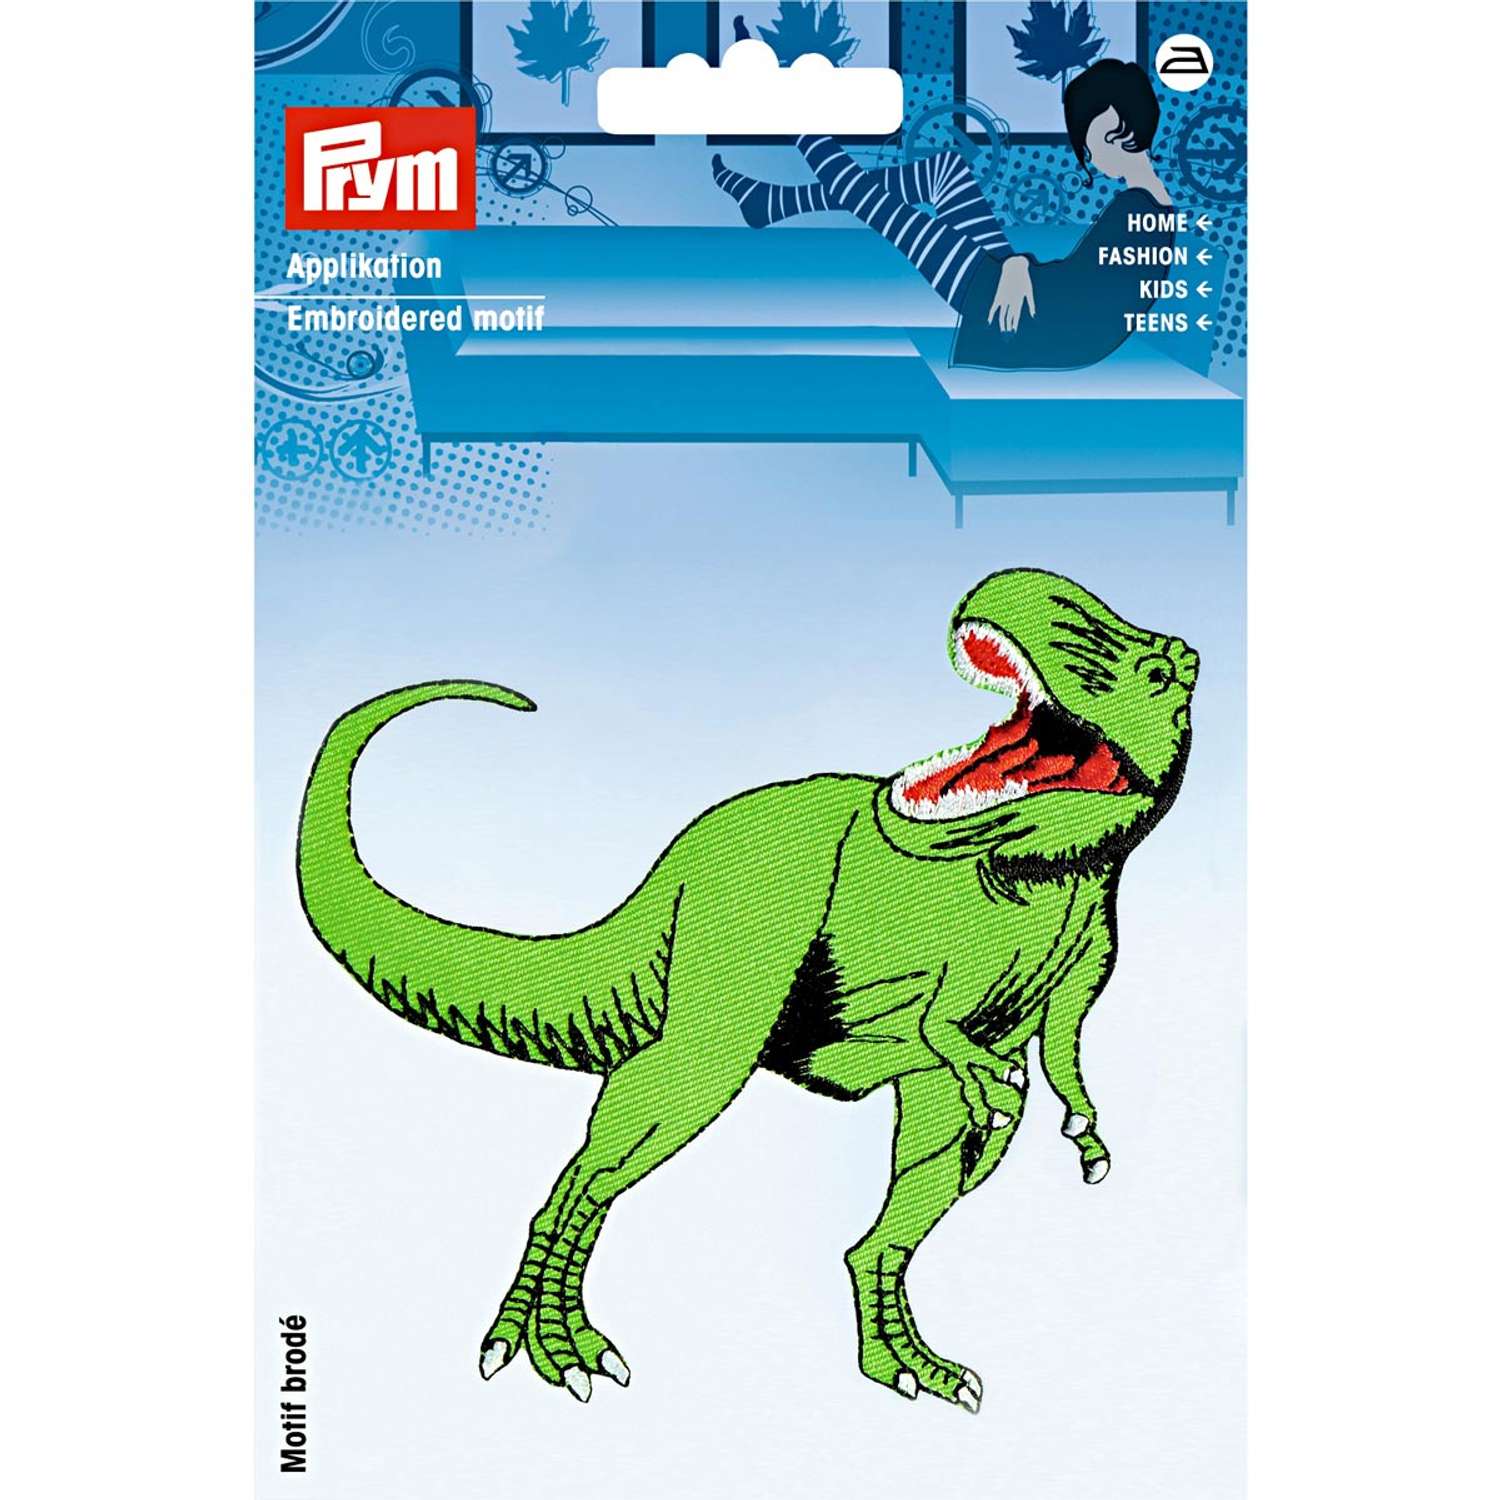 Термоаппликация Prym нашивка Динозавр 11х10.5 см для ремонта и украшения одежды 924270 - фото 10